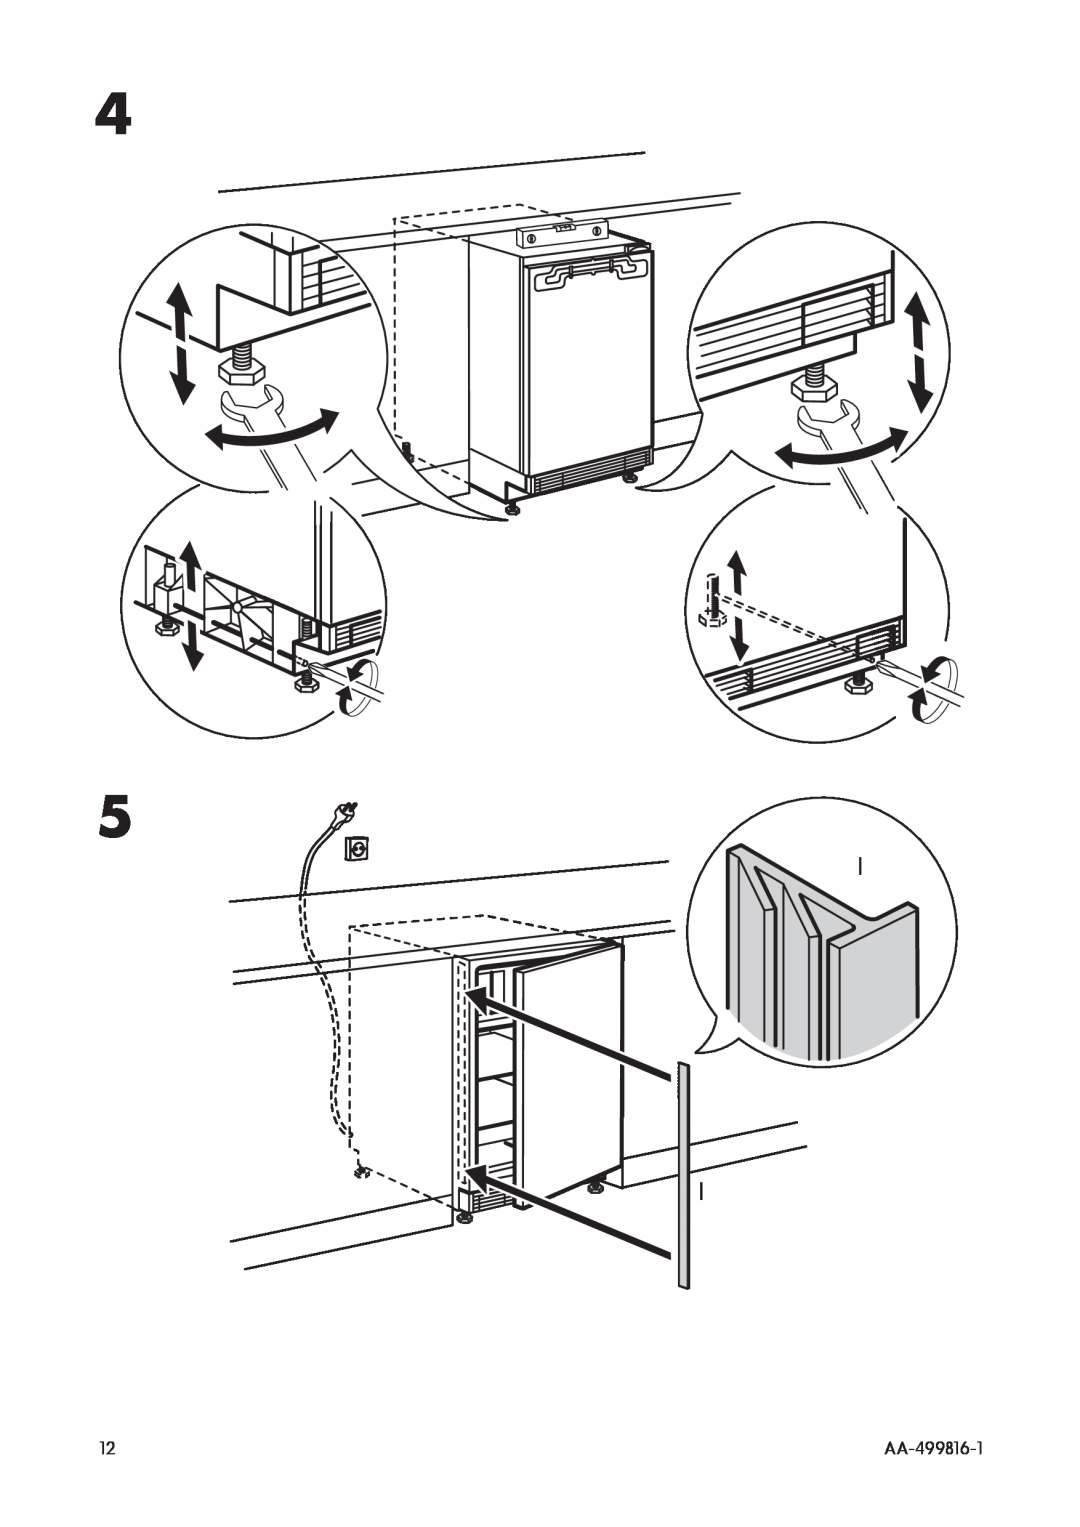 IKEA SC100/17 manual AA-499816-1 